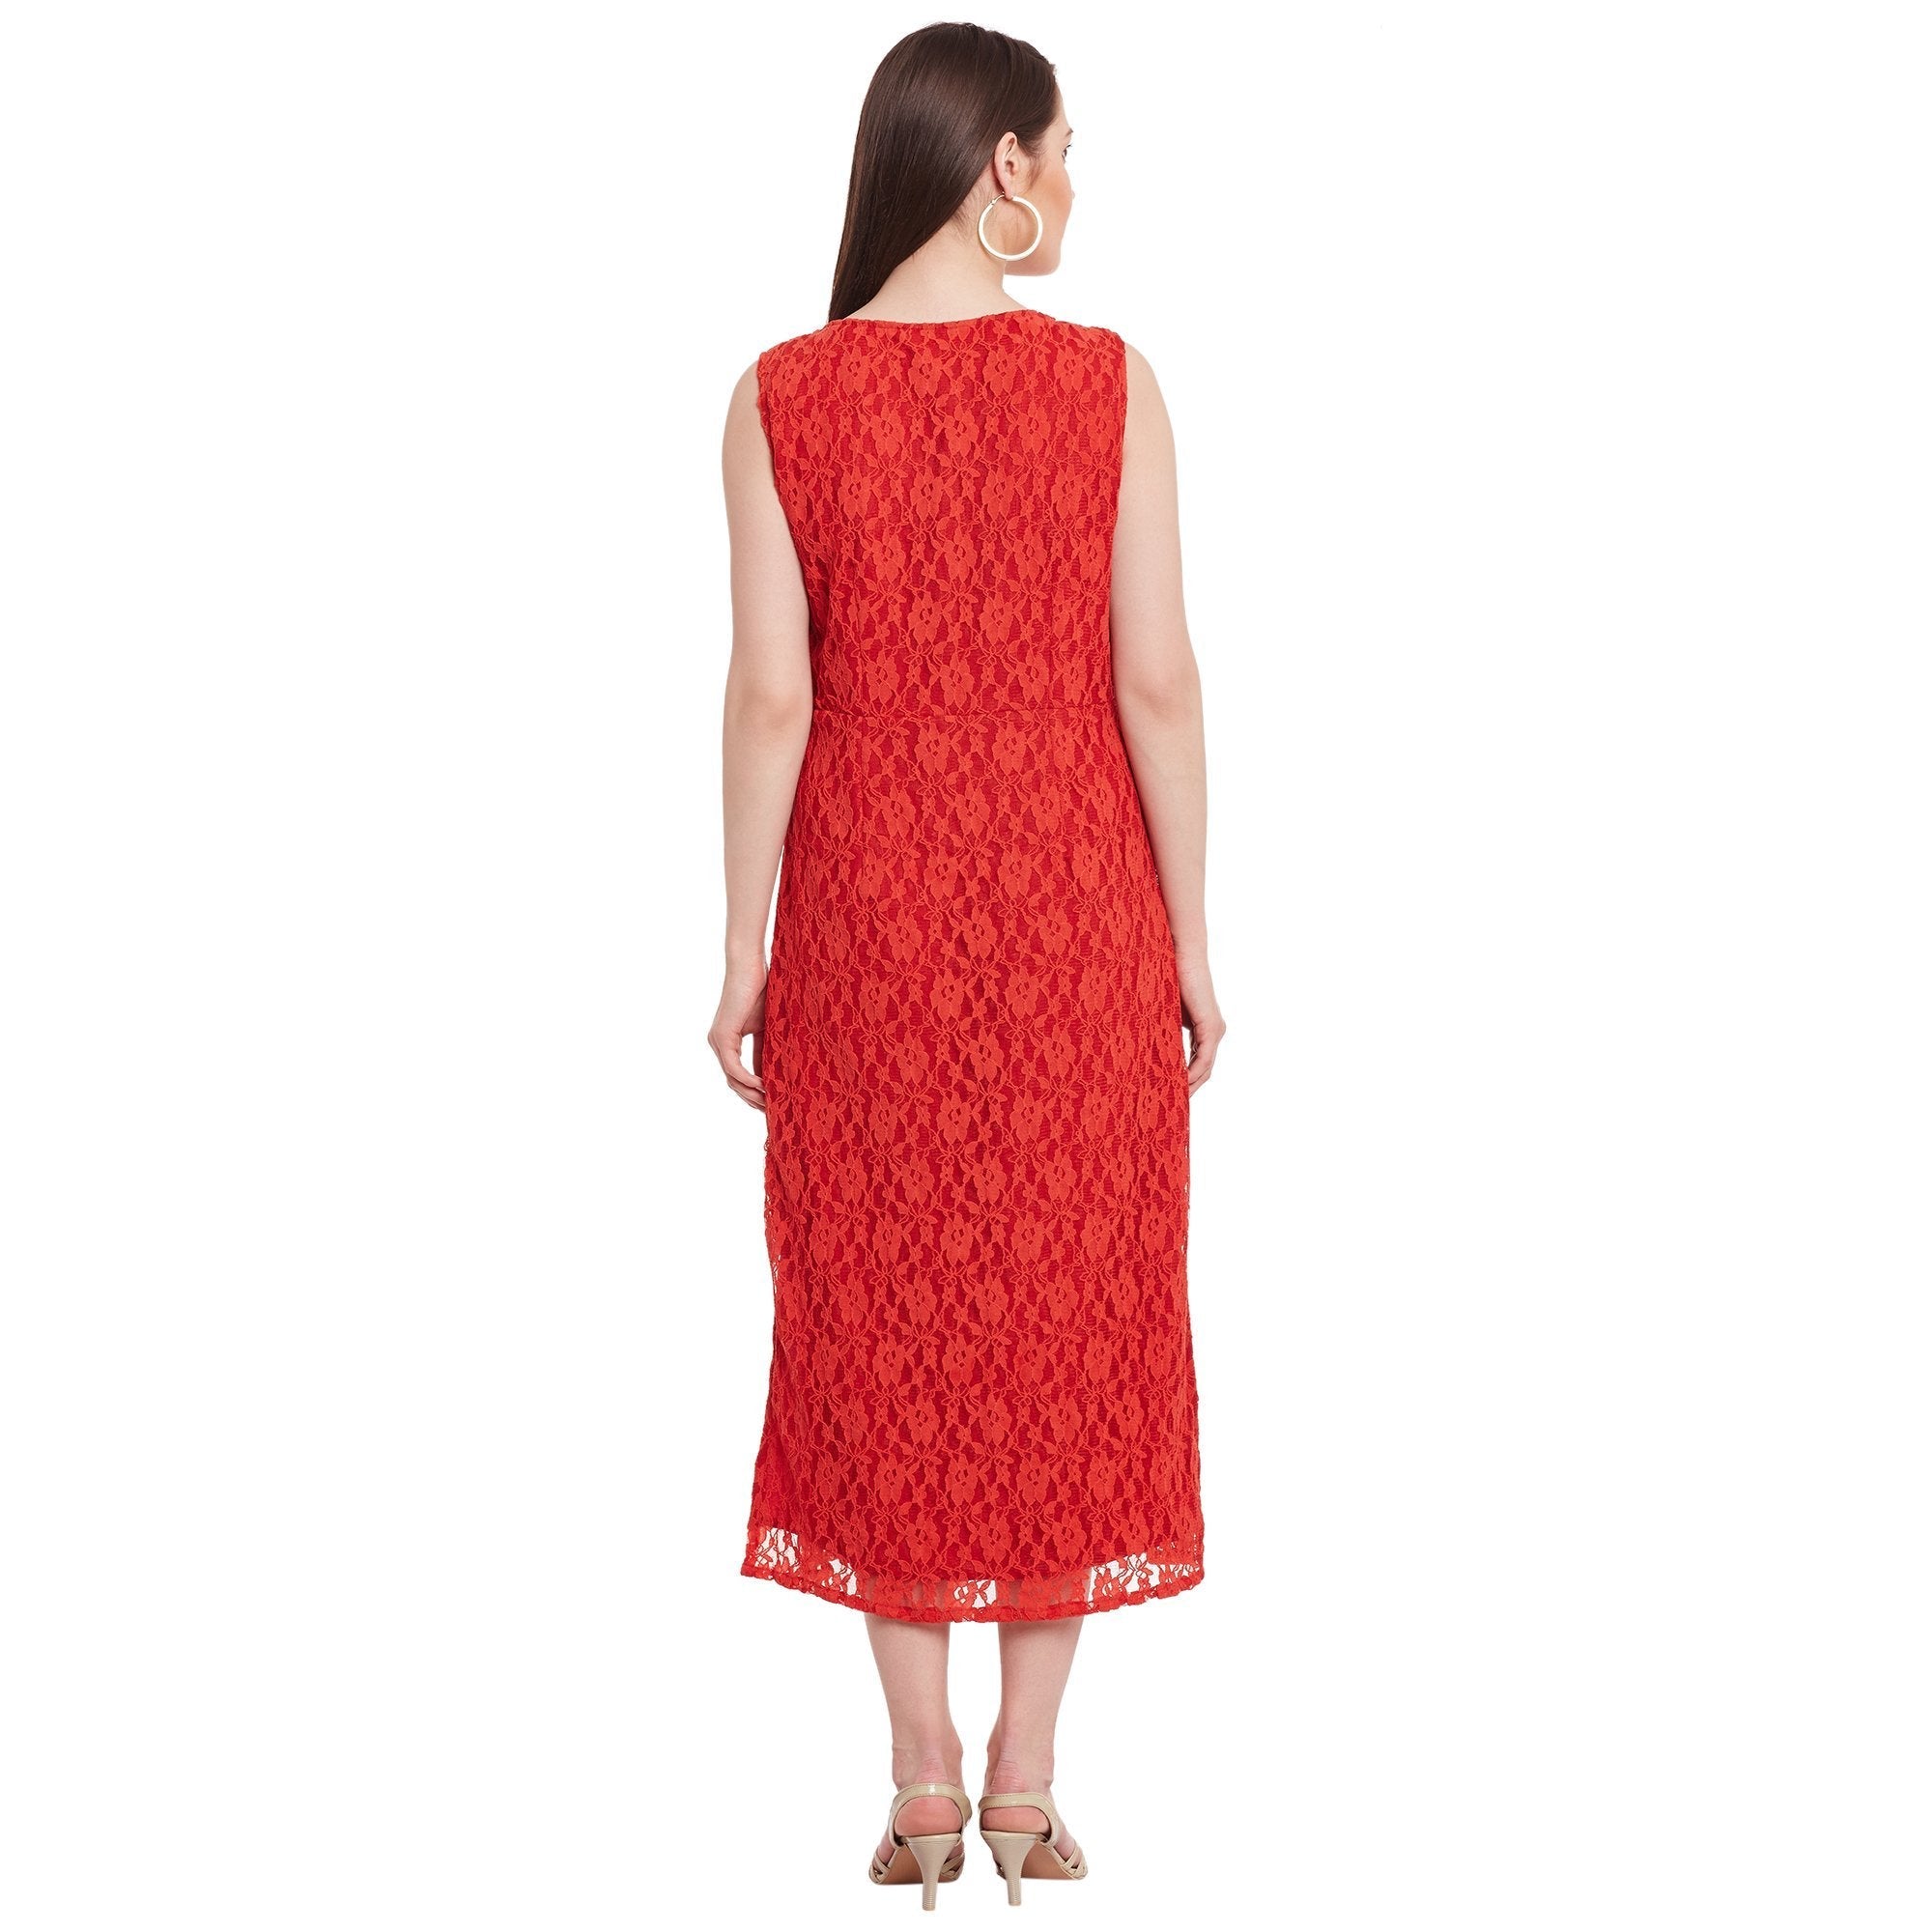 Women's Sleeveless Lace Dress - Pannkh